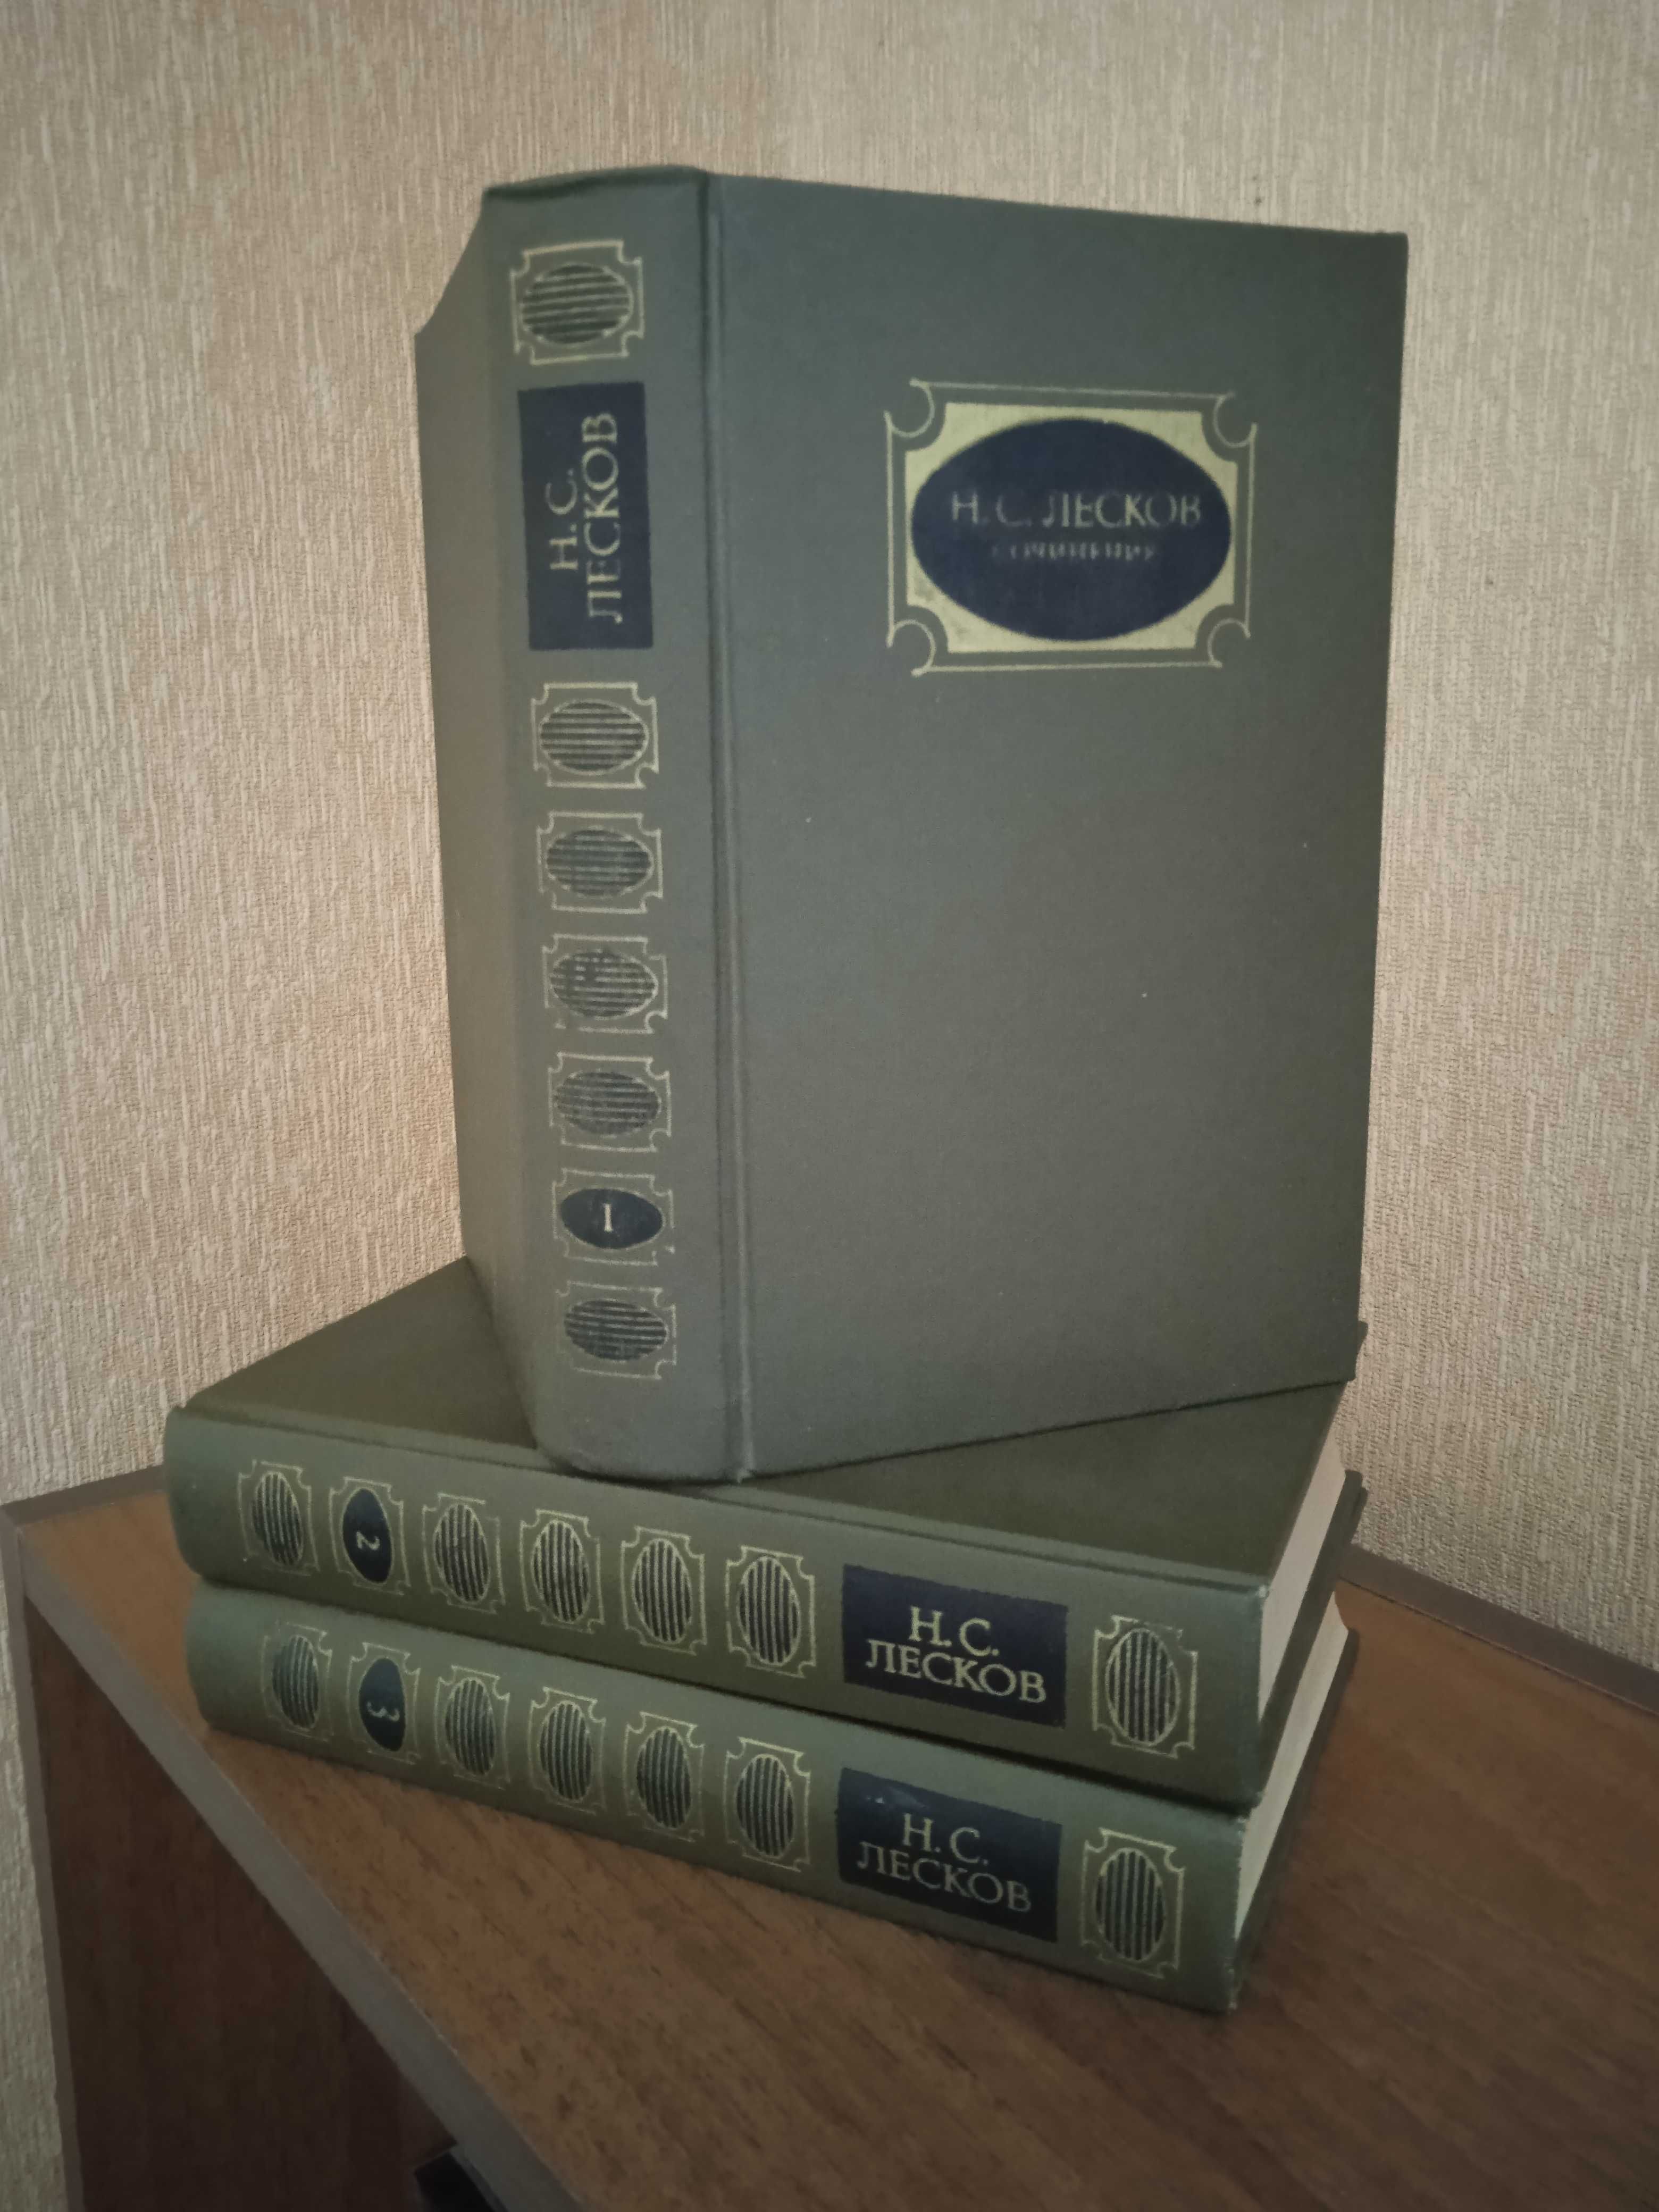 Лесков Н.С. "Твори у 3 томах". Видавництво 1988 року.